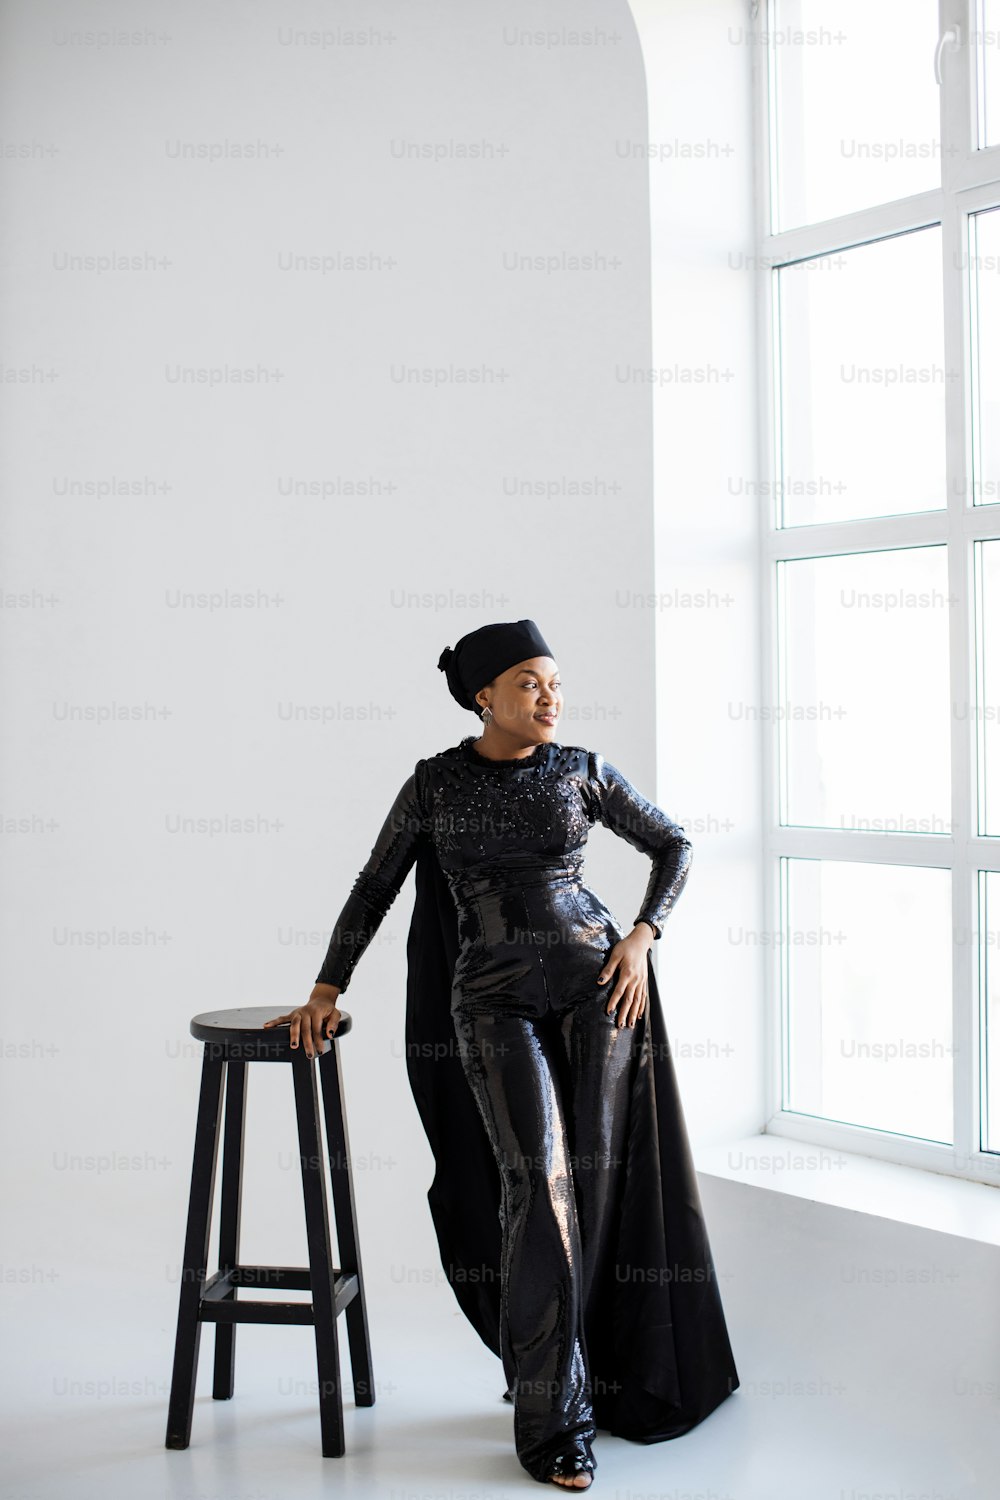 Impresionante mujer afroamericana con elegante sombrero negro y ropa apoyada en una silla alta y mirando a la ventana. Fondo de estudio blanco.